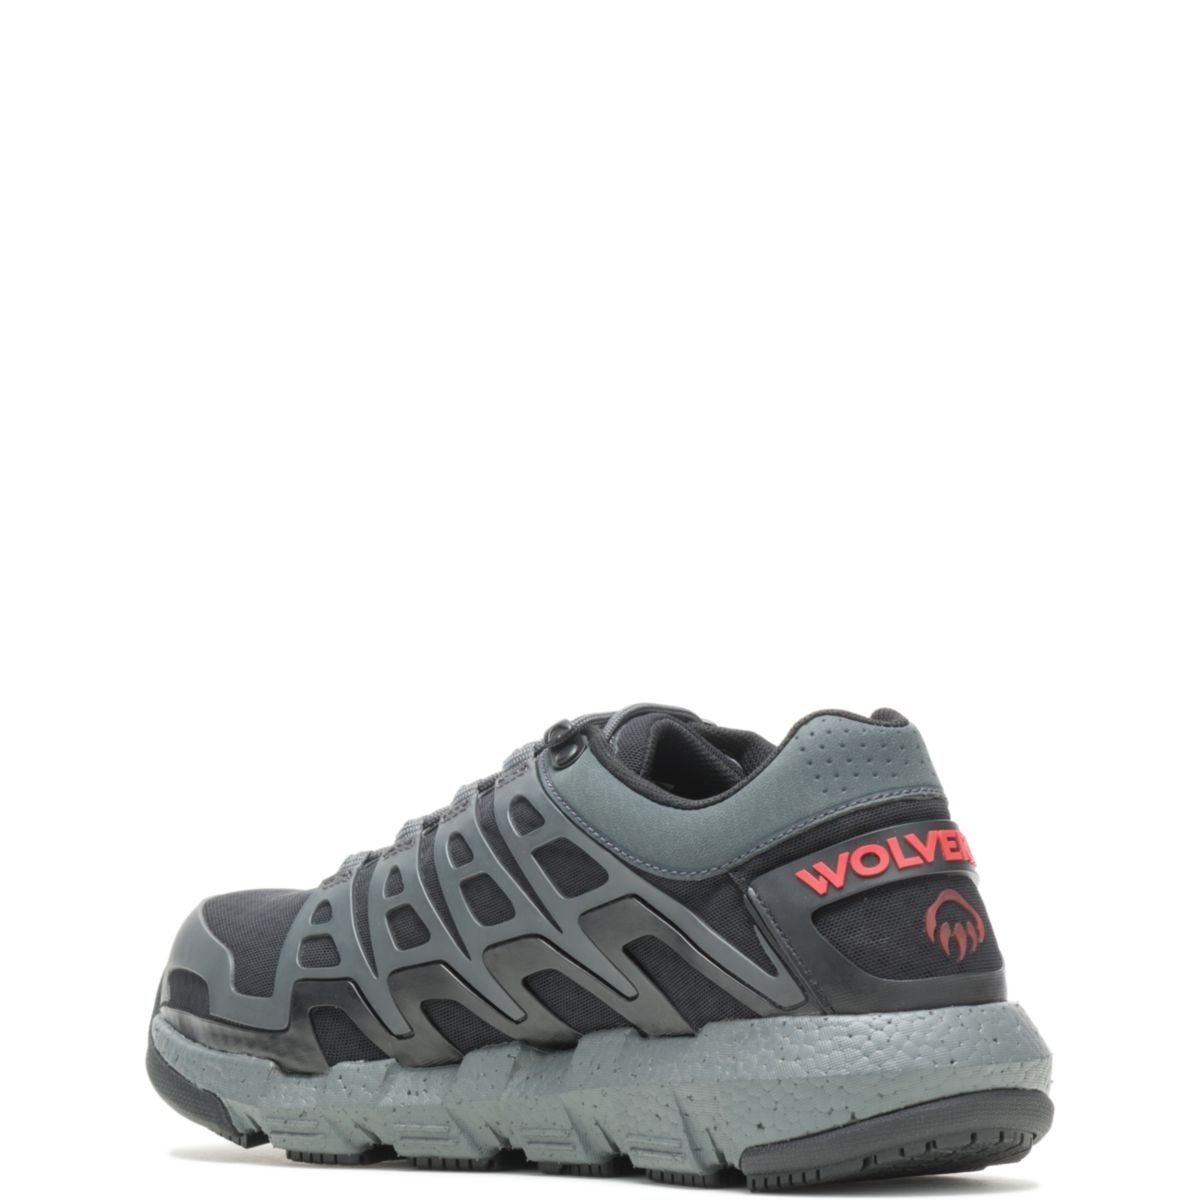 WOLVERINE Men's Rev Vent UltraSpringâ¢ DuraShocksÂ® CarbonMAXÂ® Composite Toe Work Shoe Charcoal - W211016 CHARCOAL - CHARCOAL, 8.5